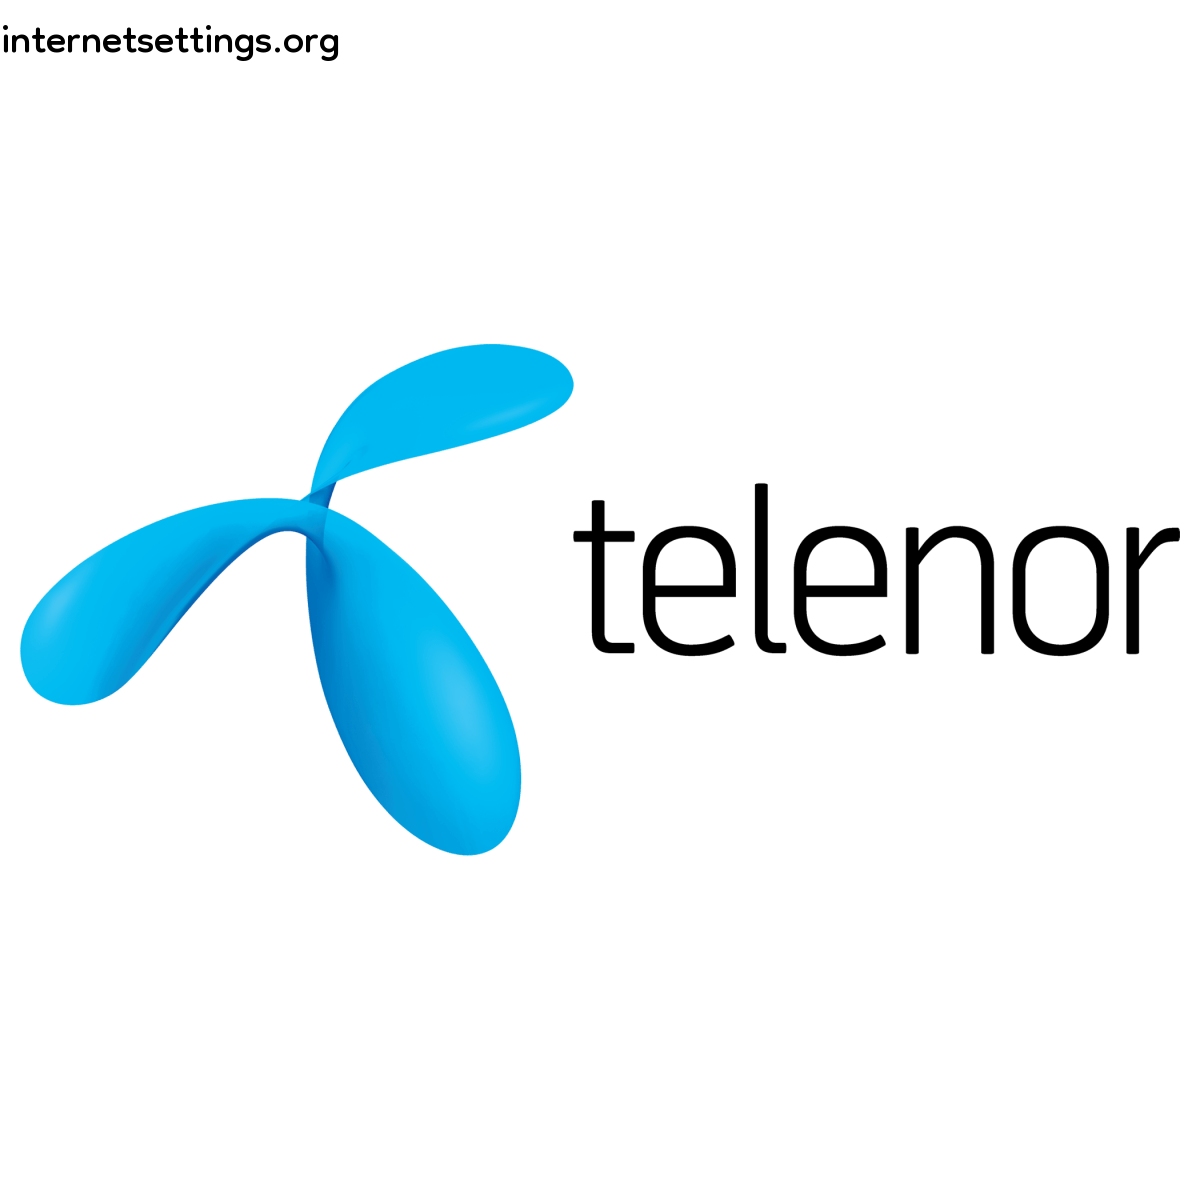 Telenor Denmark (Sonofon)